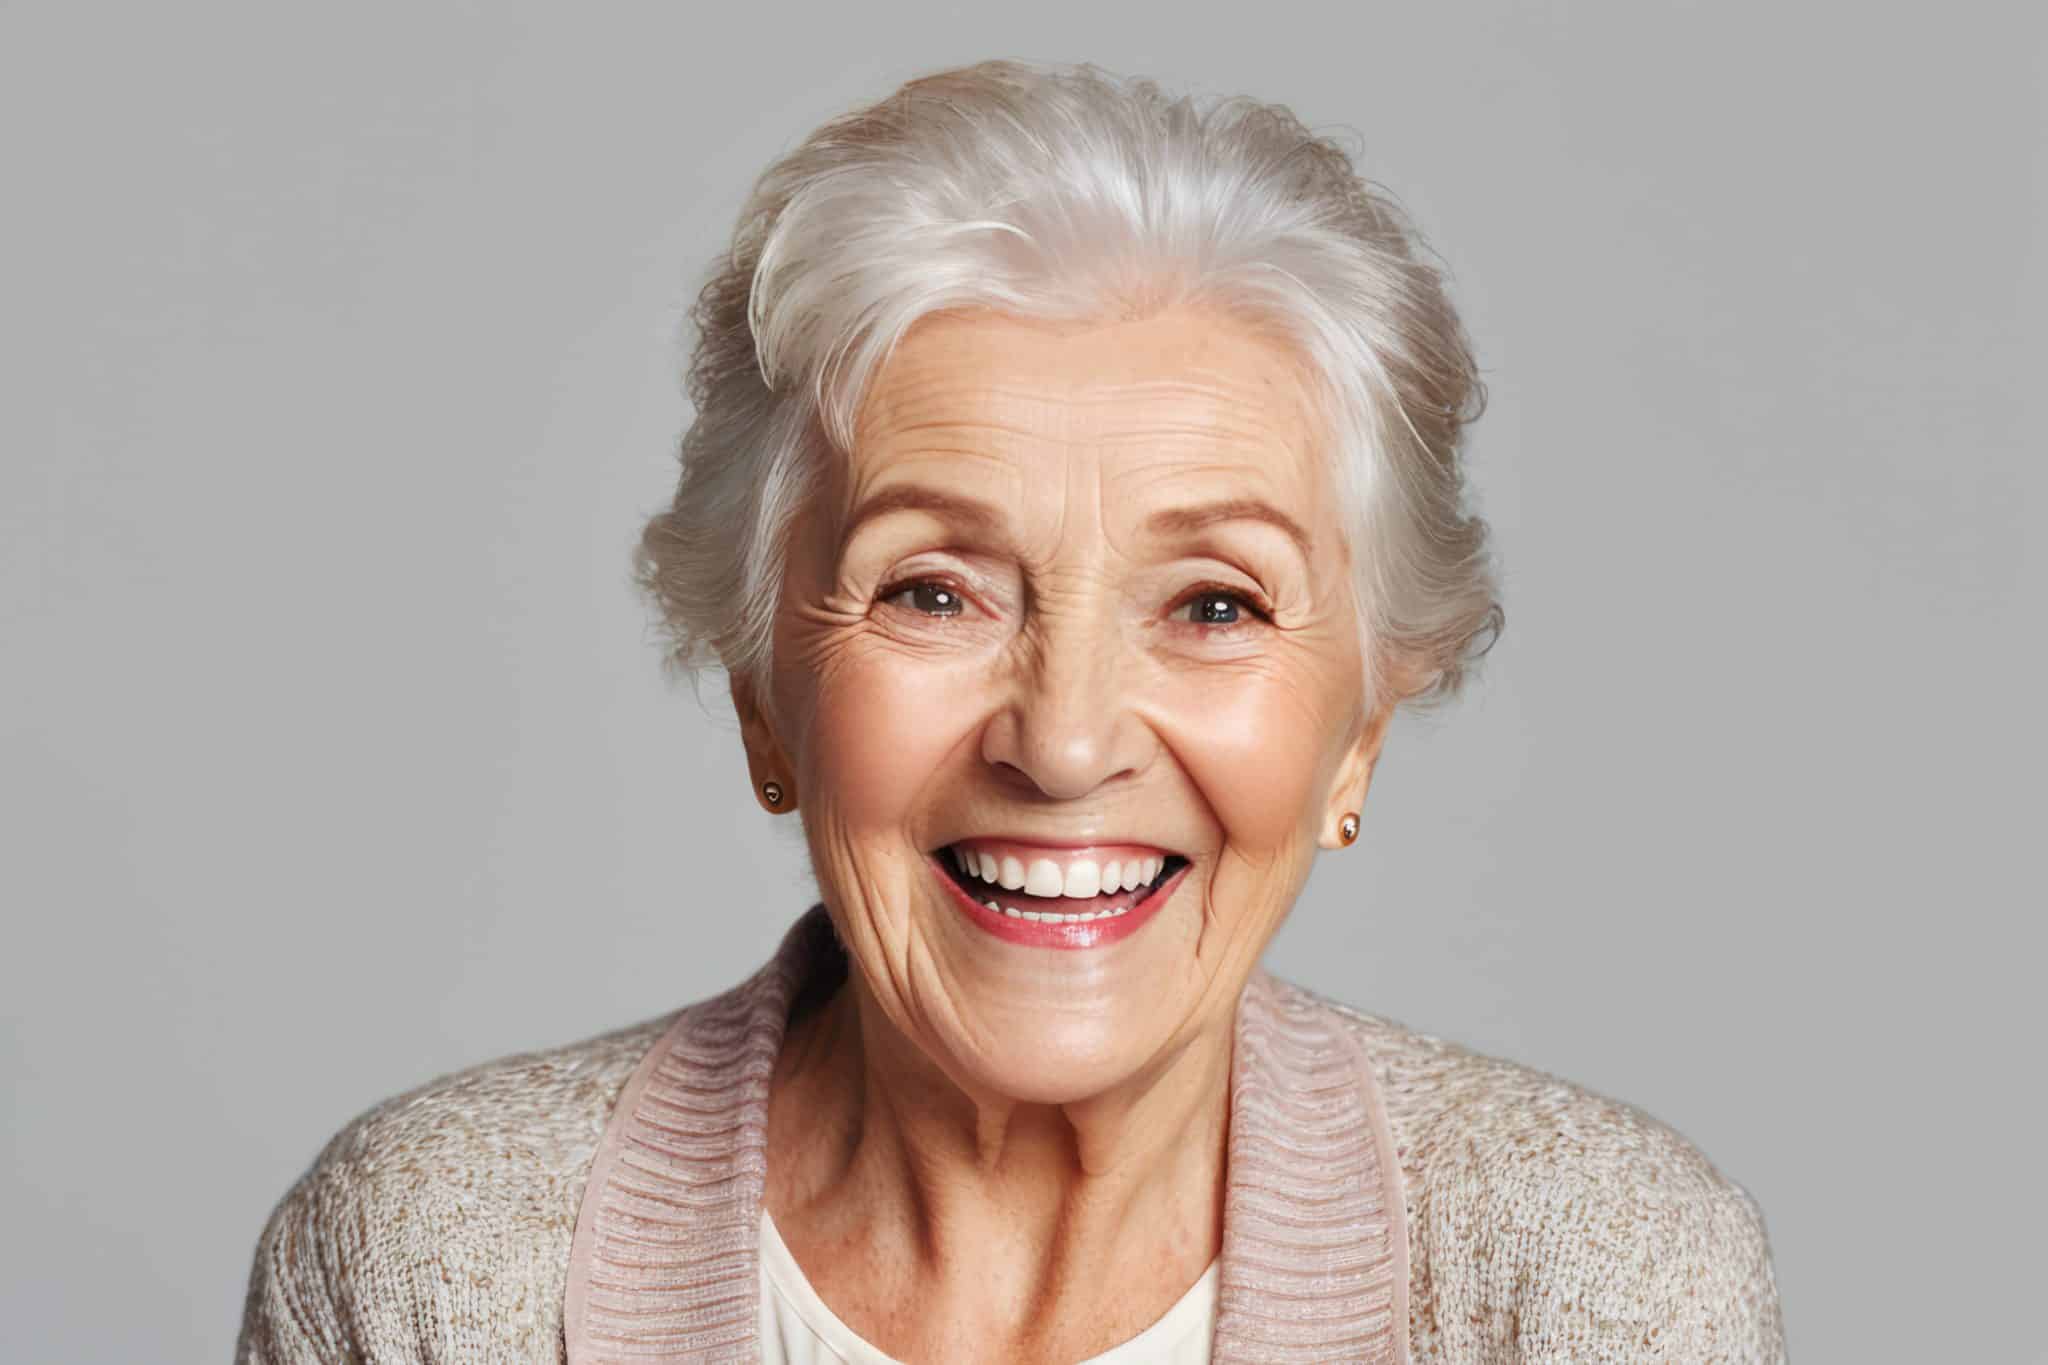 Das Foto zeigt eine ältere Frau mit strahlendem Lächeln und schönen, gepflegten Zähnen vor grauem Hintergrund.